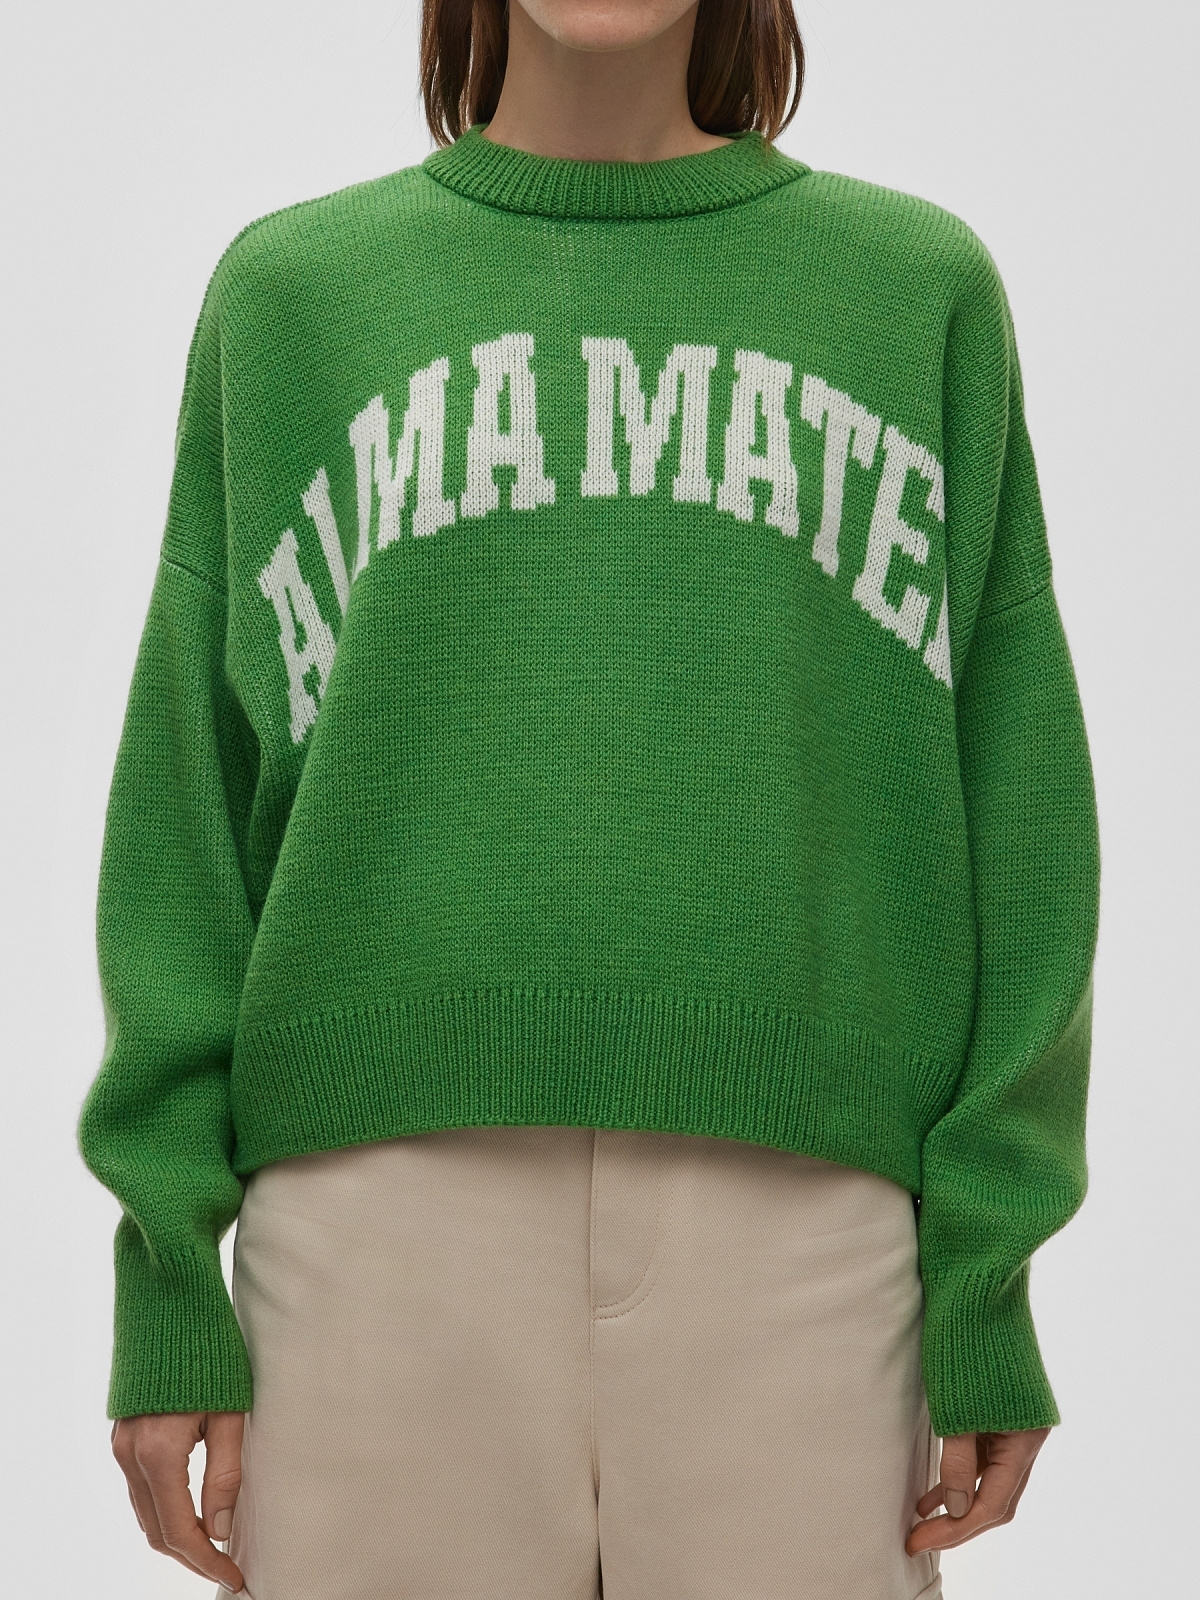 Джемпер свободного кроя с жаккардом Alma Mater, зелено-белый